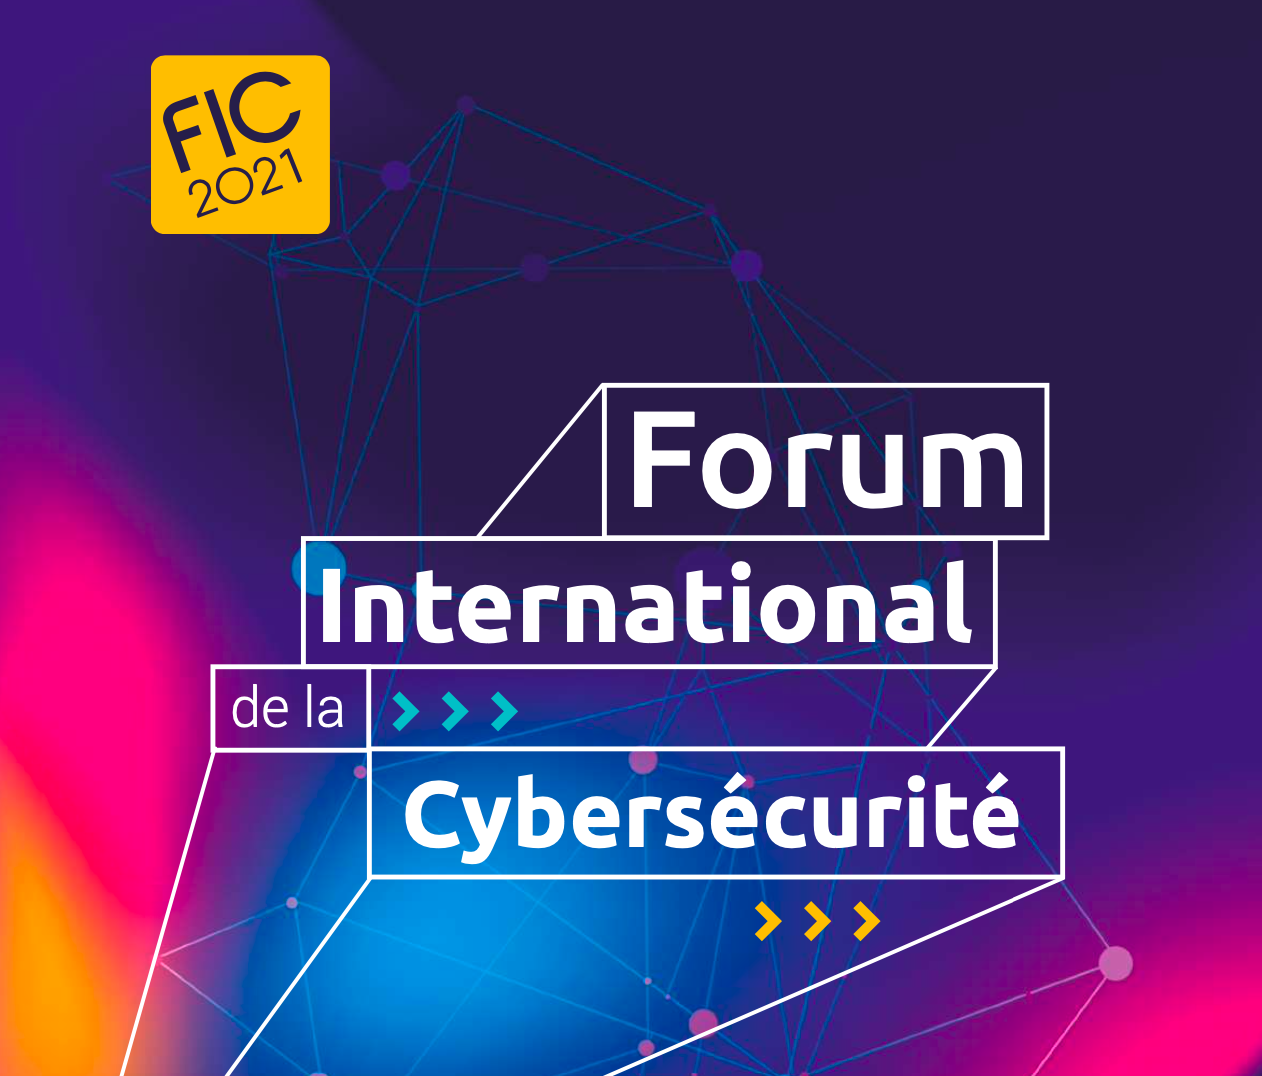 Forum FIC 2021